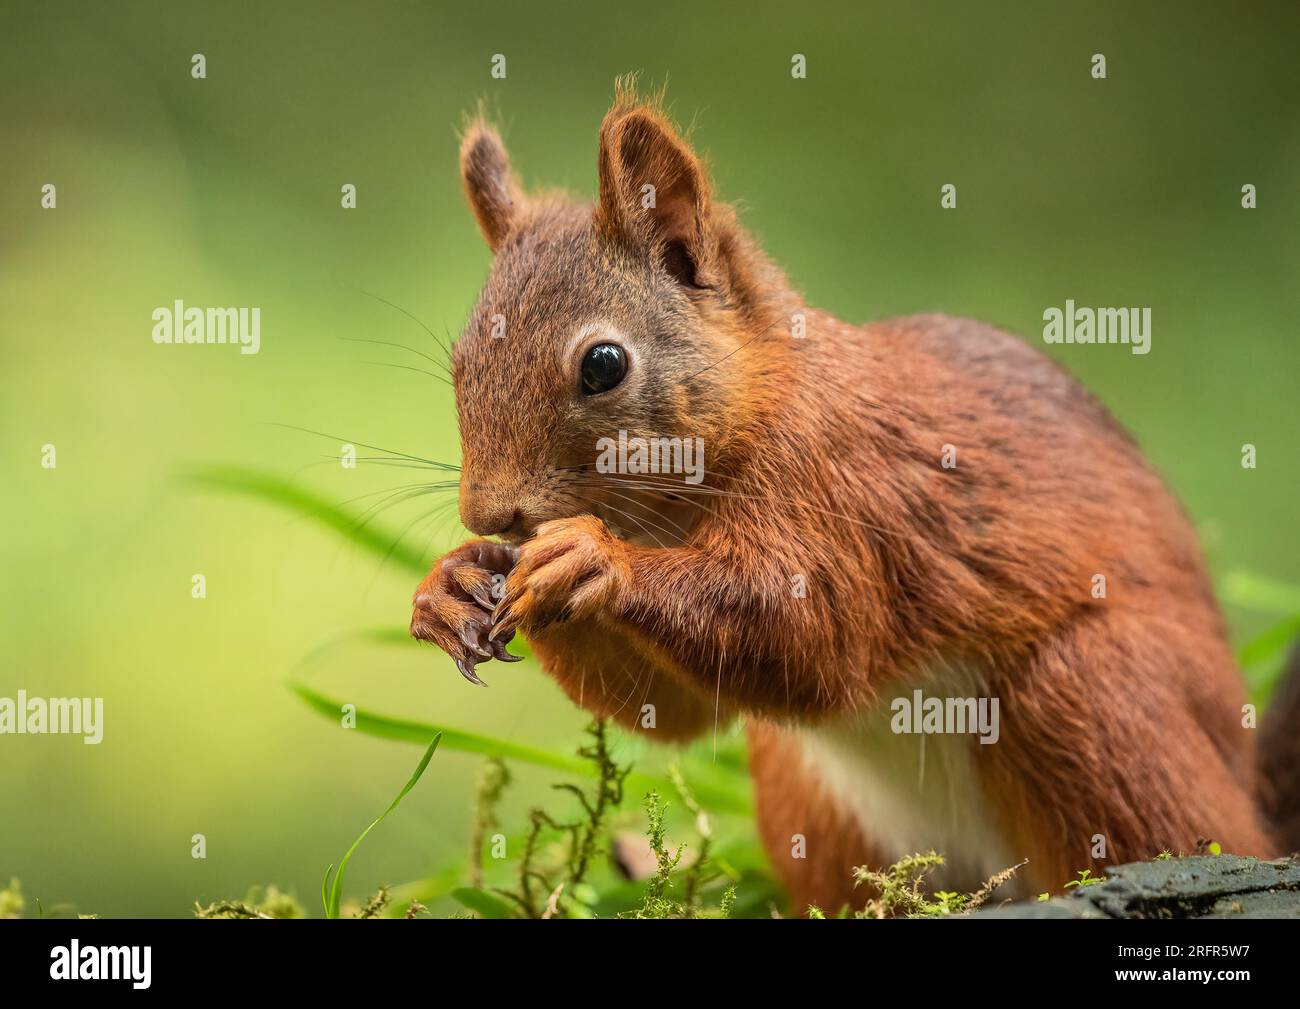 Nahaufnahme eines seltenen roten Eichhörnchens ( Sciurus vulgaris) auf klarem grünen Hintergrund. Es frisst eine Nuss auf einer mossigen Bank. Yorkshire, Großbritannien. Stockfoto